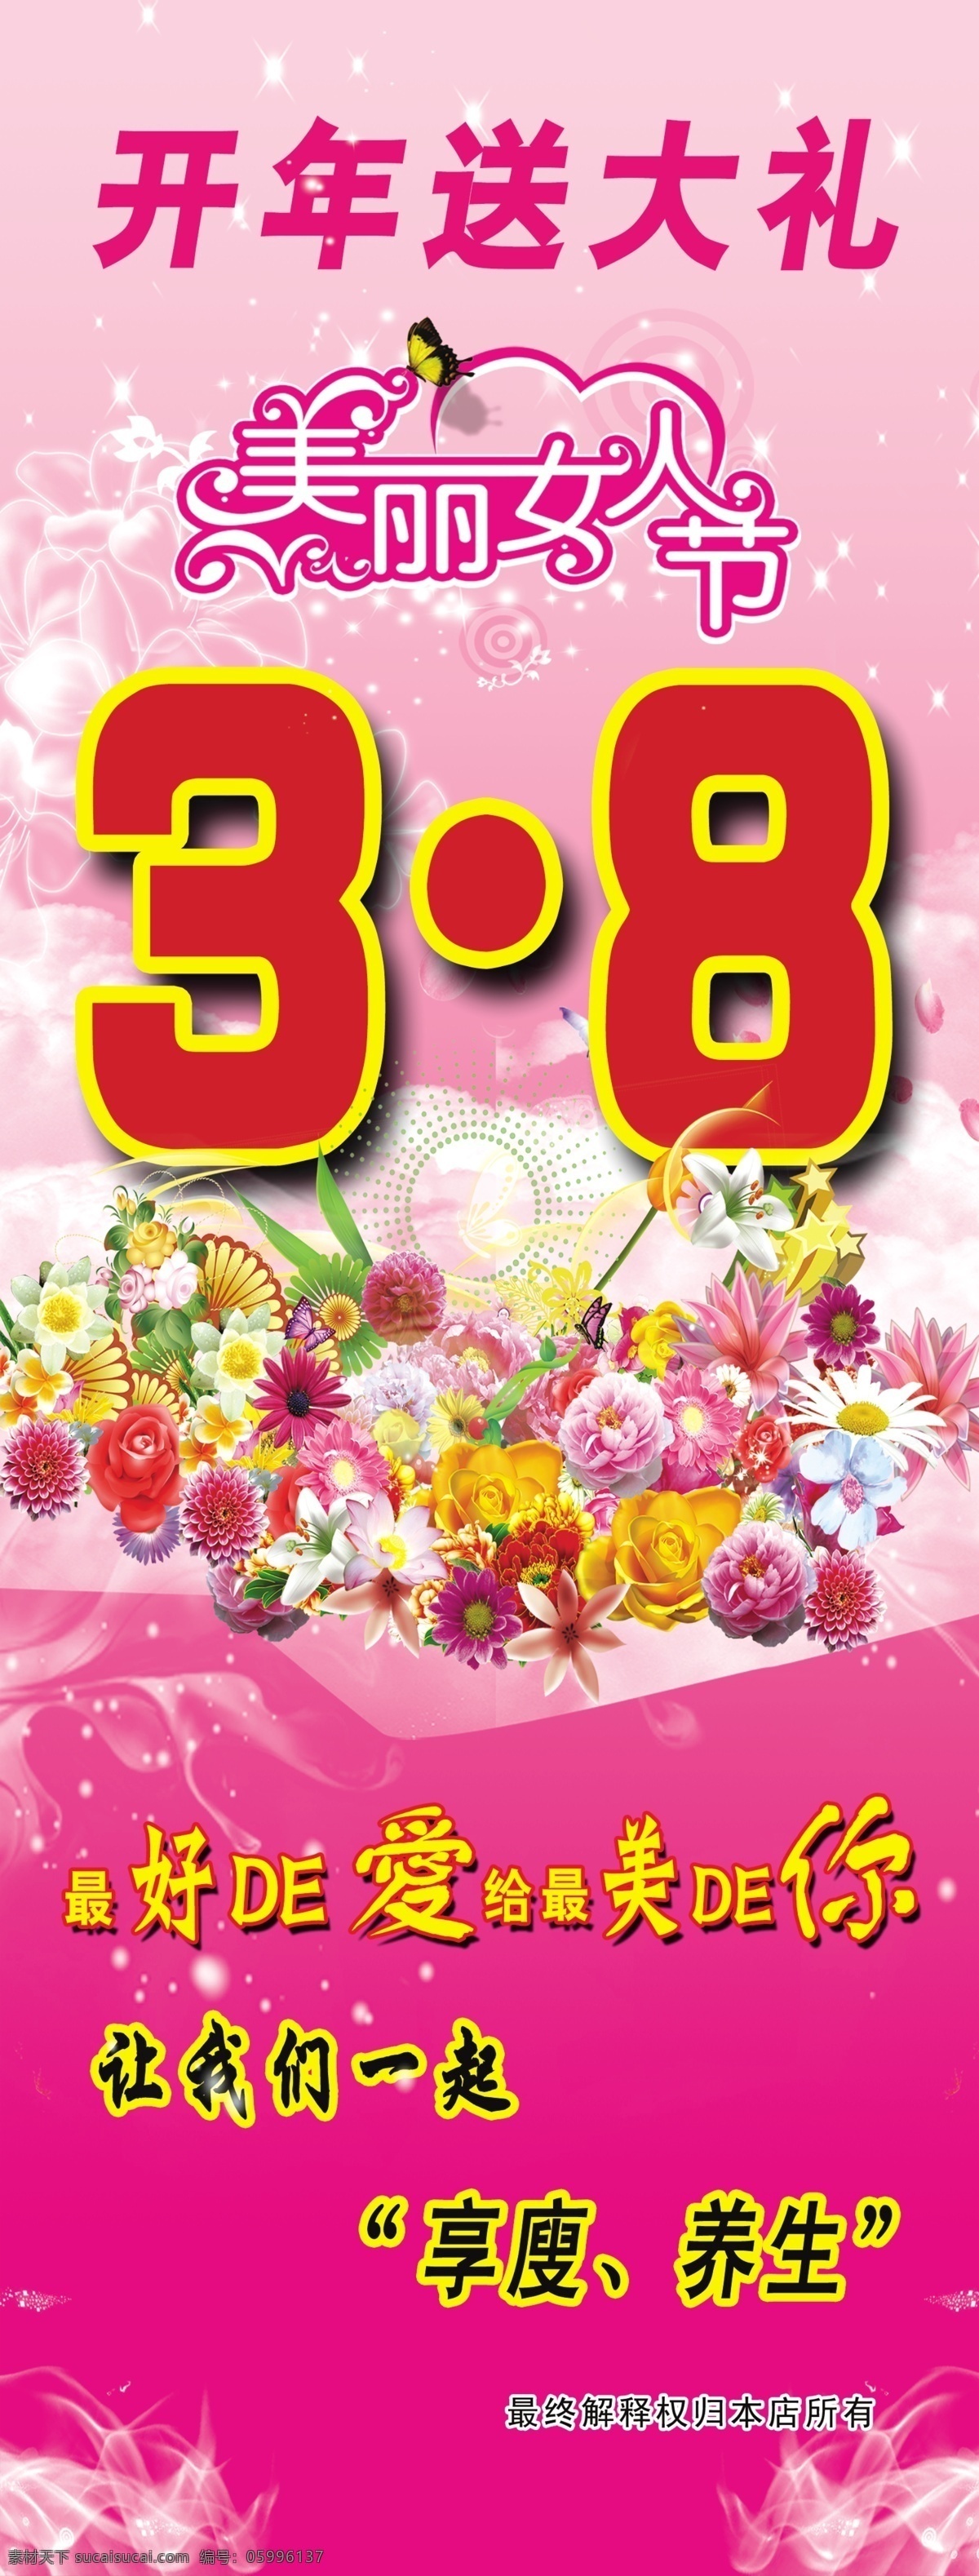 38展架 妇女节 妇女节展架 妇女节宣传 妇女节活动 妇女节海报 展板模板 广告设计模板 源文件